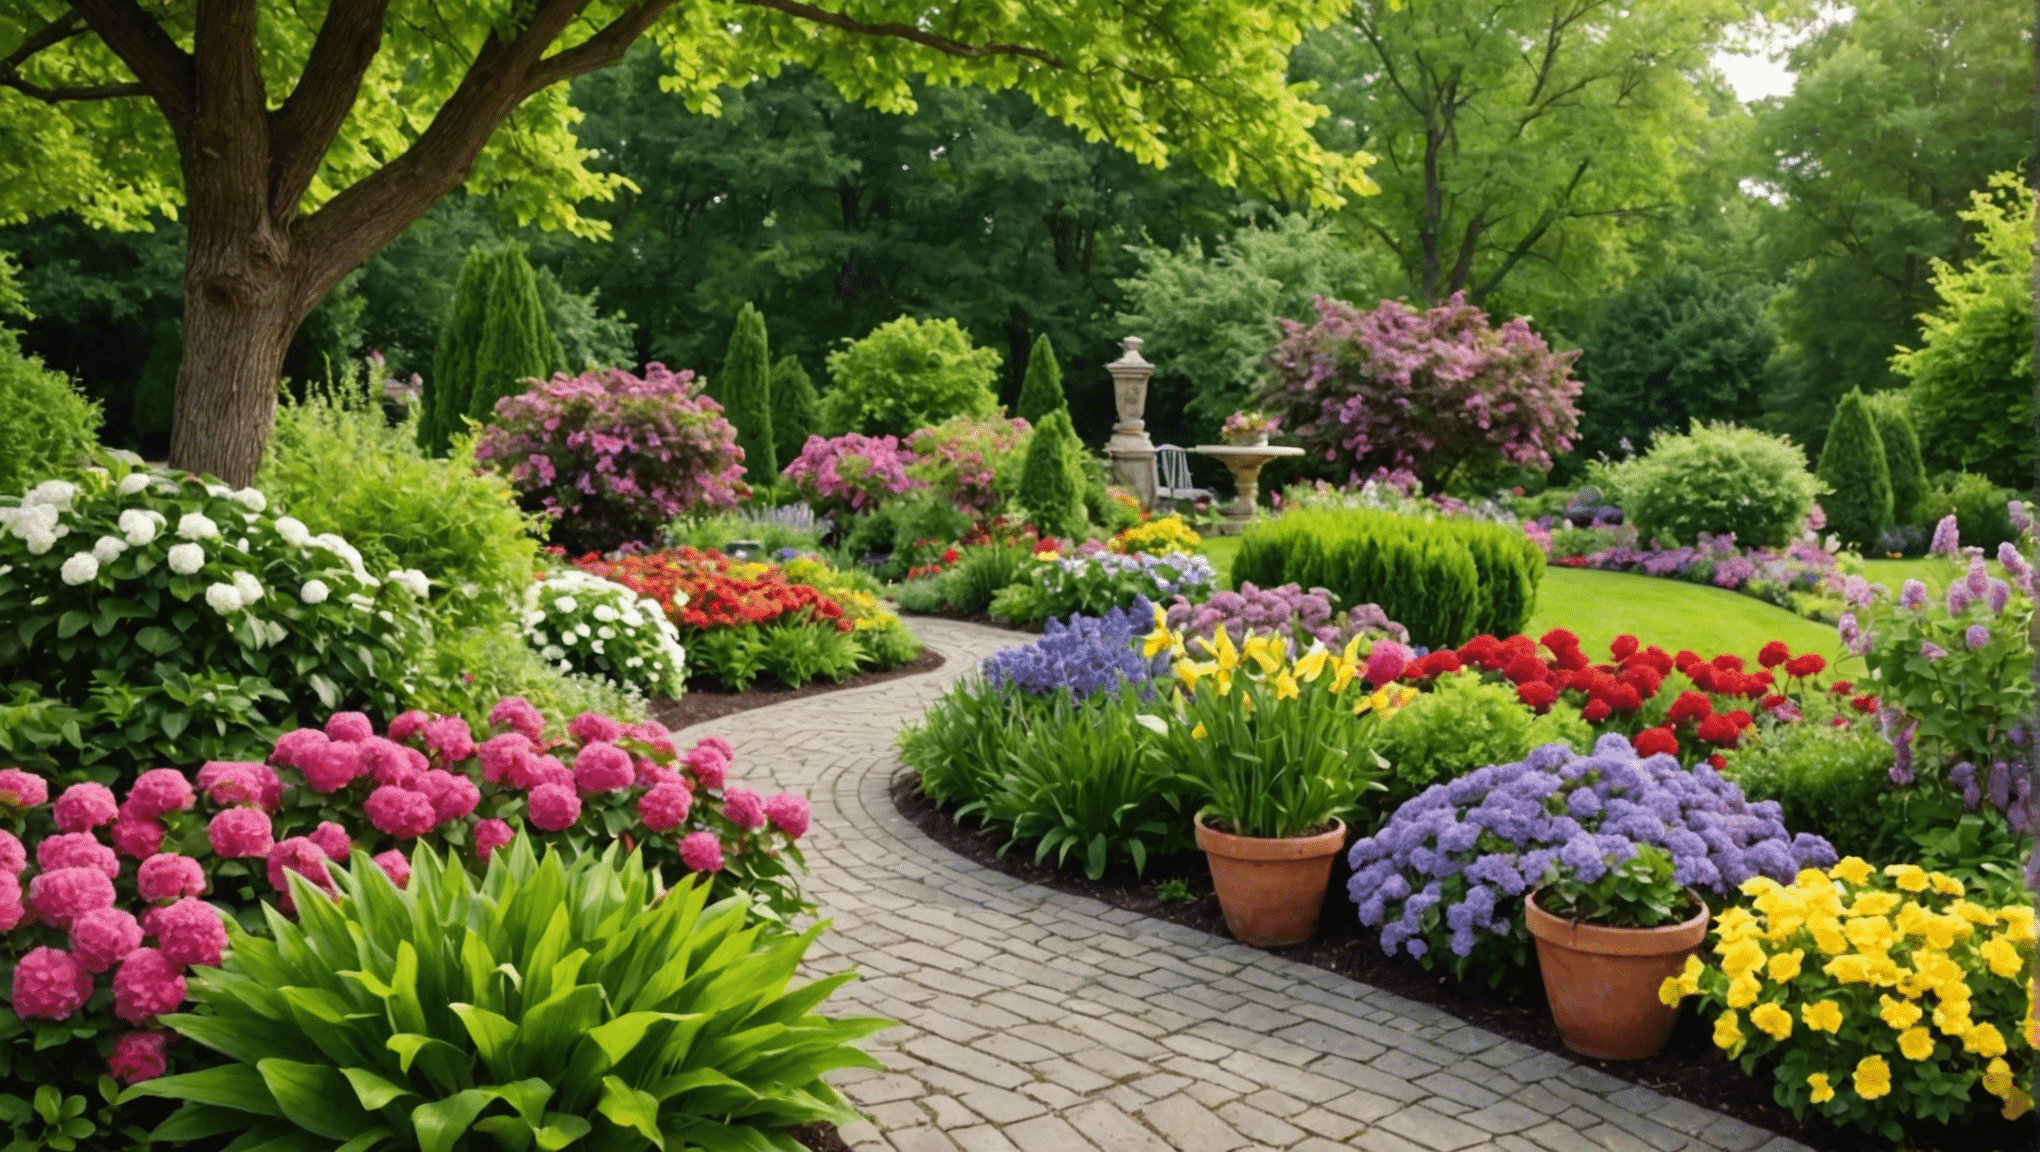 objevte nejlepší nápady na letní zahradničení, jak pozvednout váš venkovní prostor. od živých květinových aranžmá až po inovativní udržitelné postupy, najděte inspiraci pro pěstování prosperující zahrady v této sezóně.